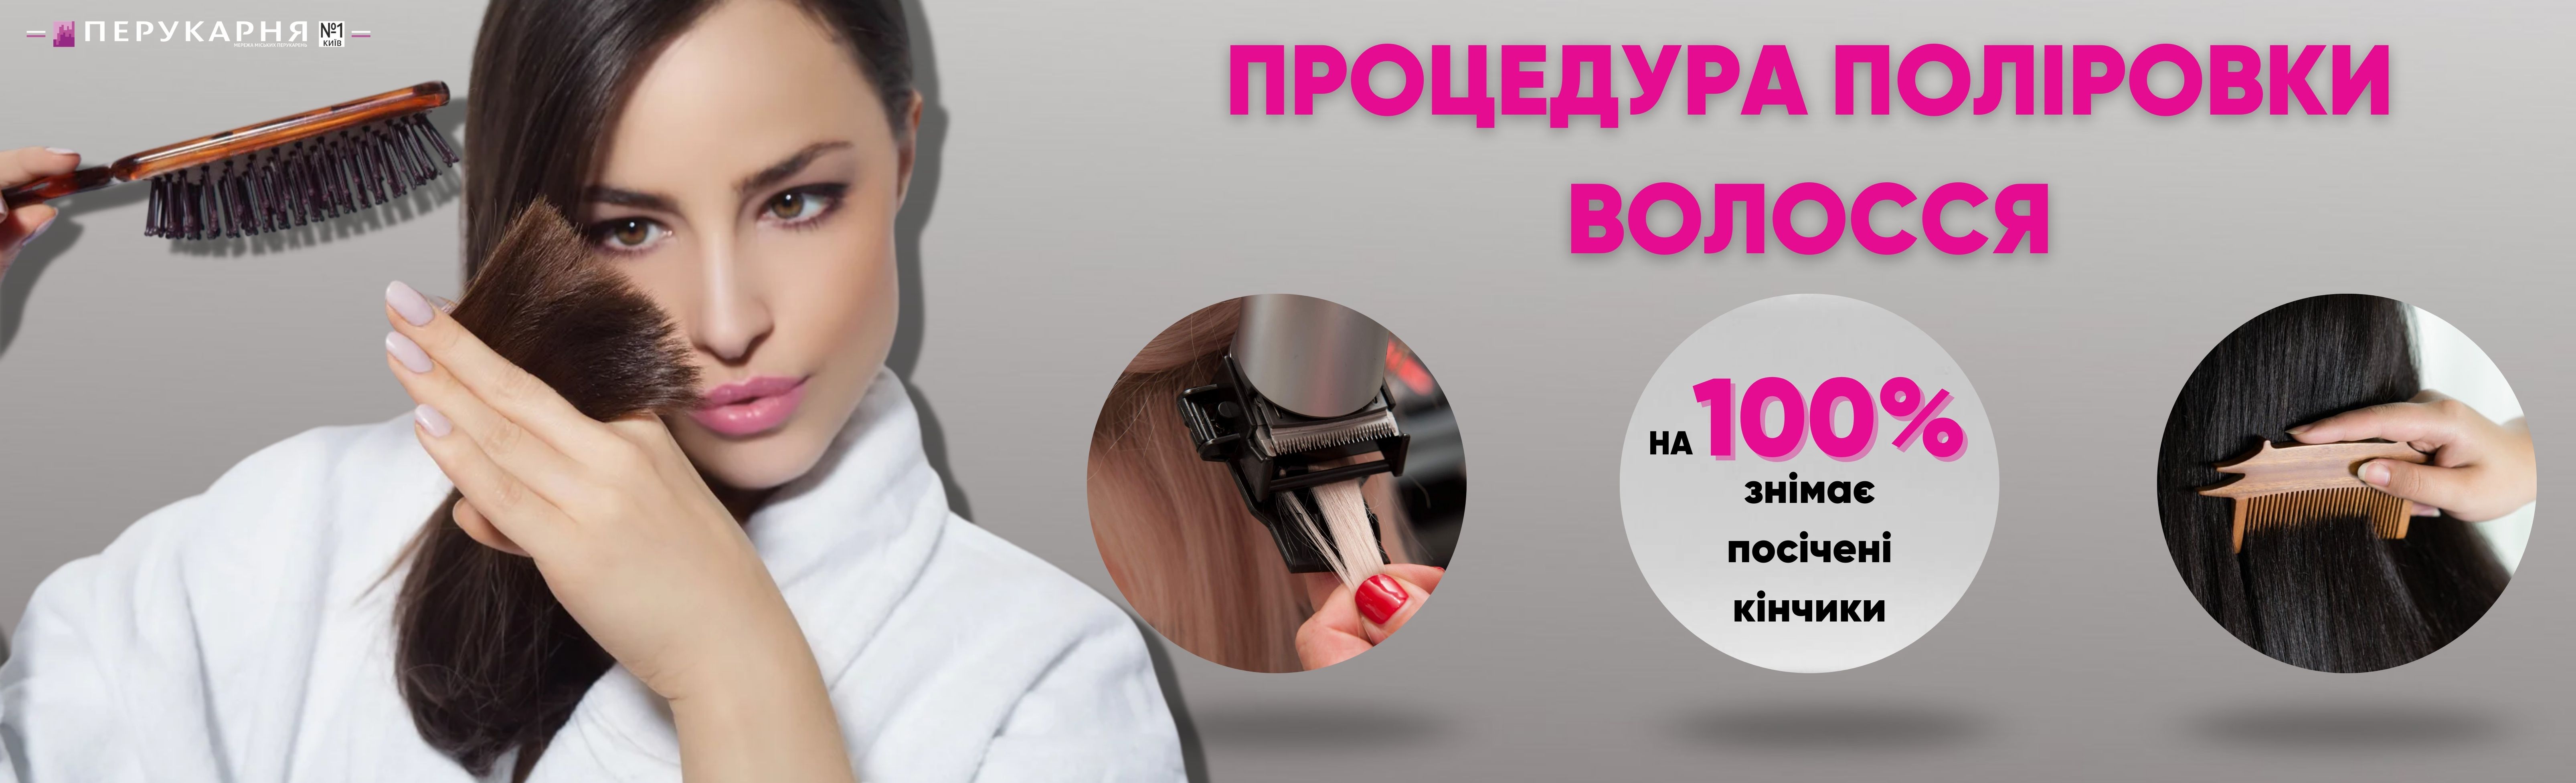 Полировка волос в салонах парикмахерских и маникюрных услуг «Парикмахерская №1» в Киеве